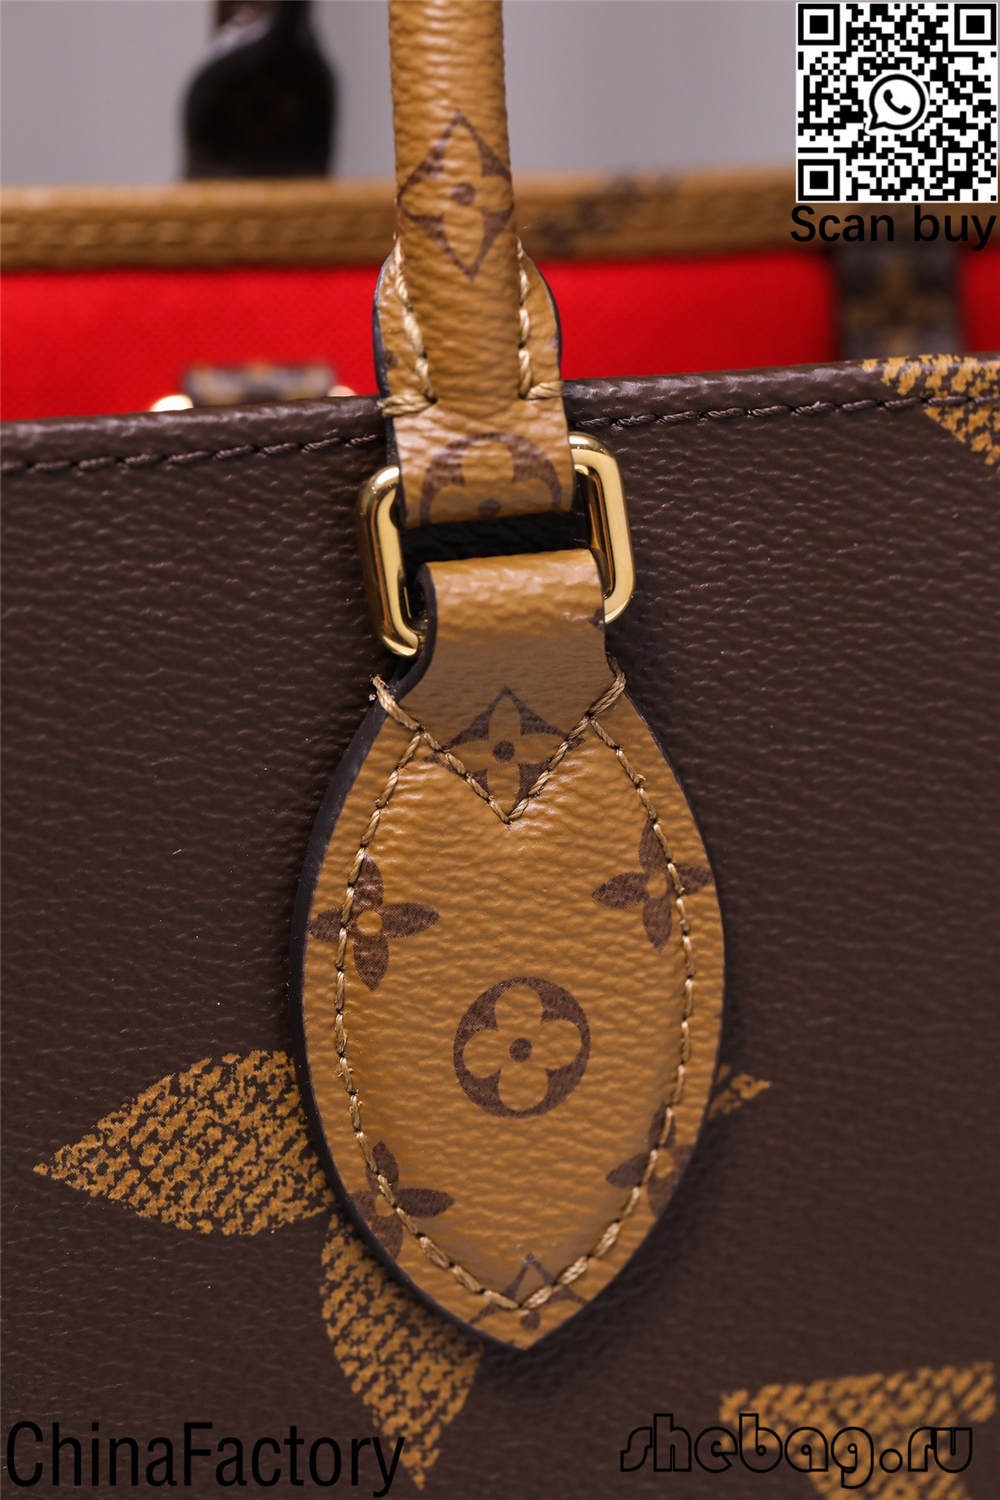 Descripcions i preus de la bossa de rèplica de Louis Vitton (actualitzat el 2022) - Botiga en línia de bosses falses de Louis Vuitton de millor qualitat, bossa de dissenyador de rèplica ru